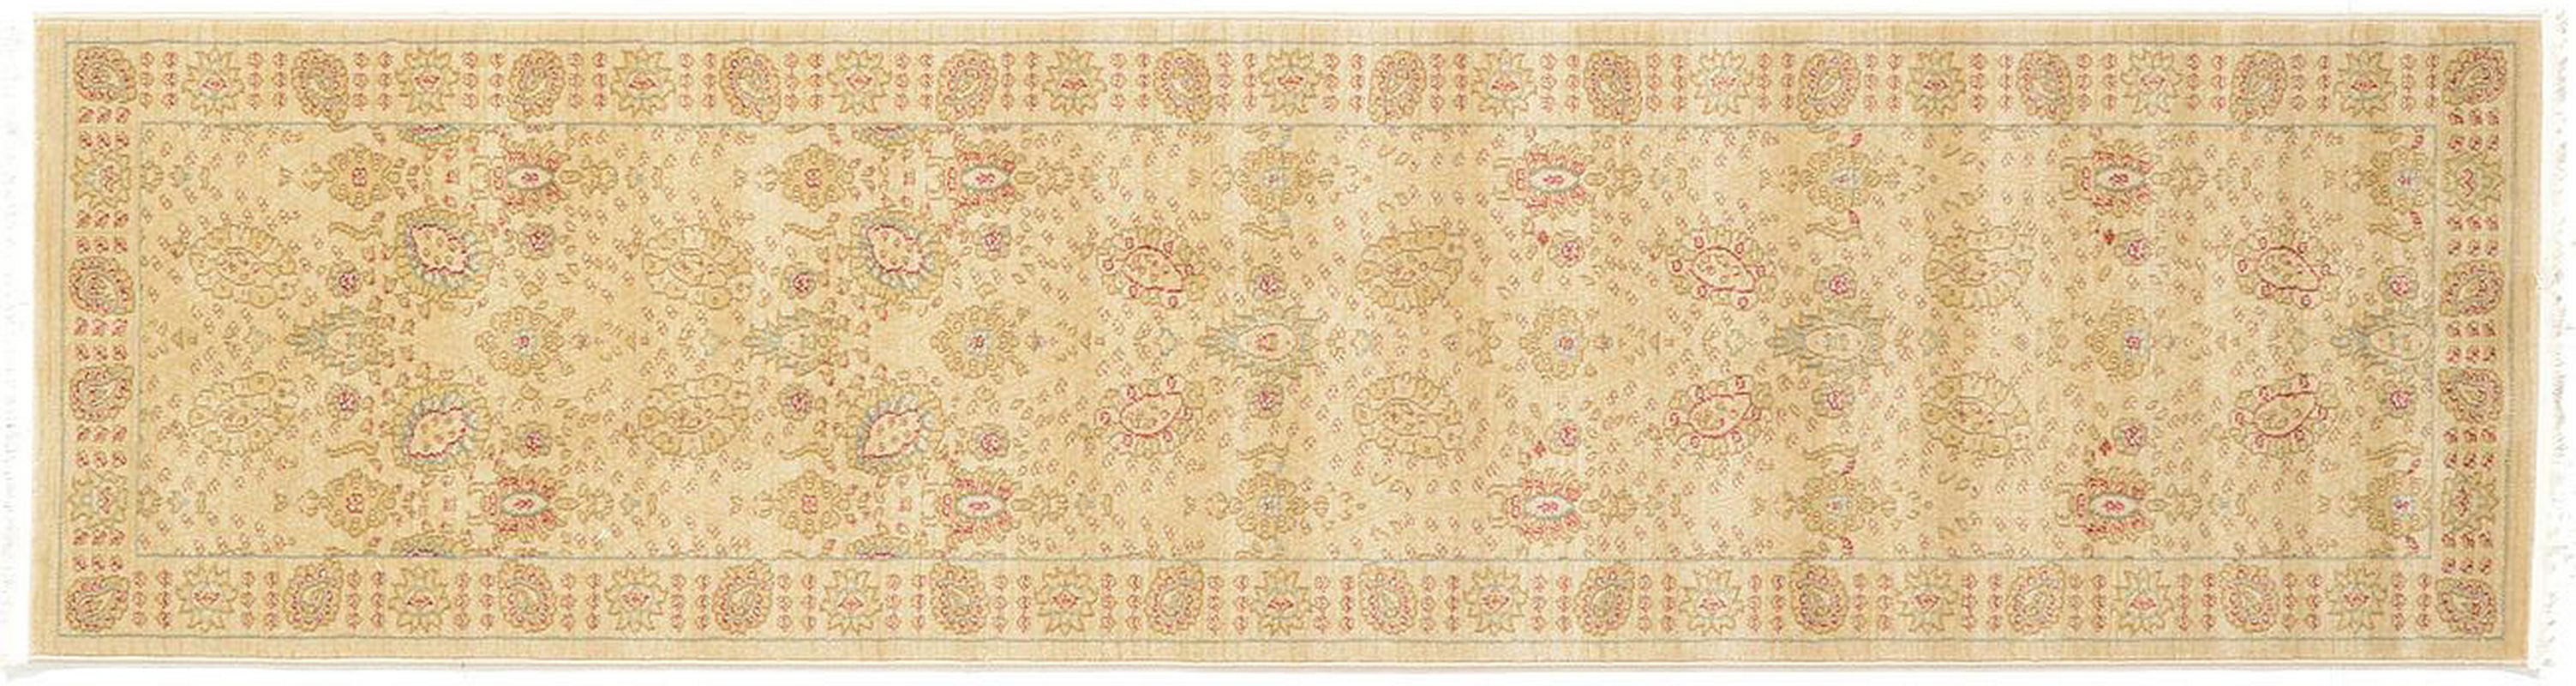 古典经典地毯ID9750